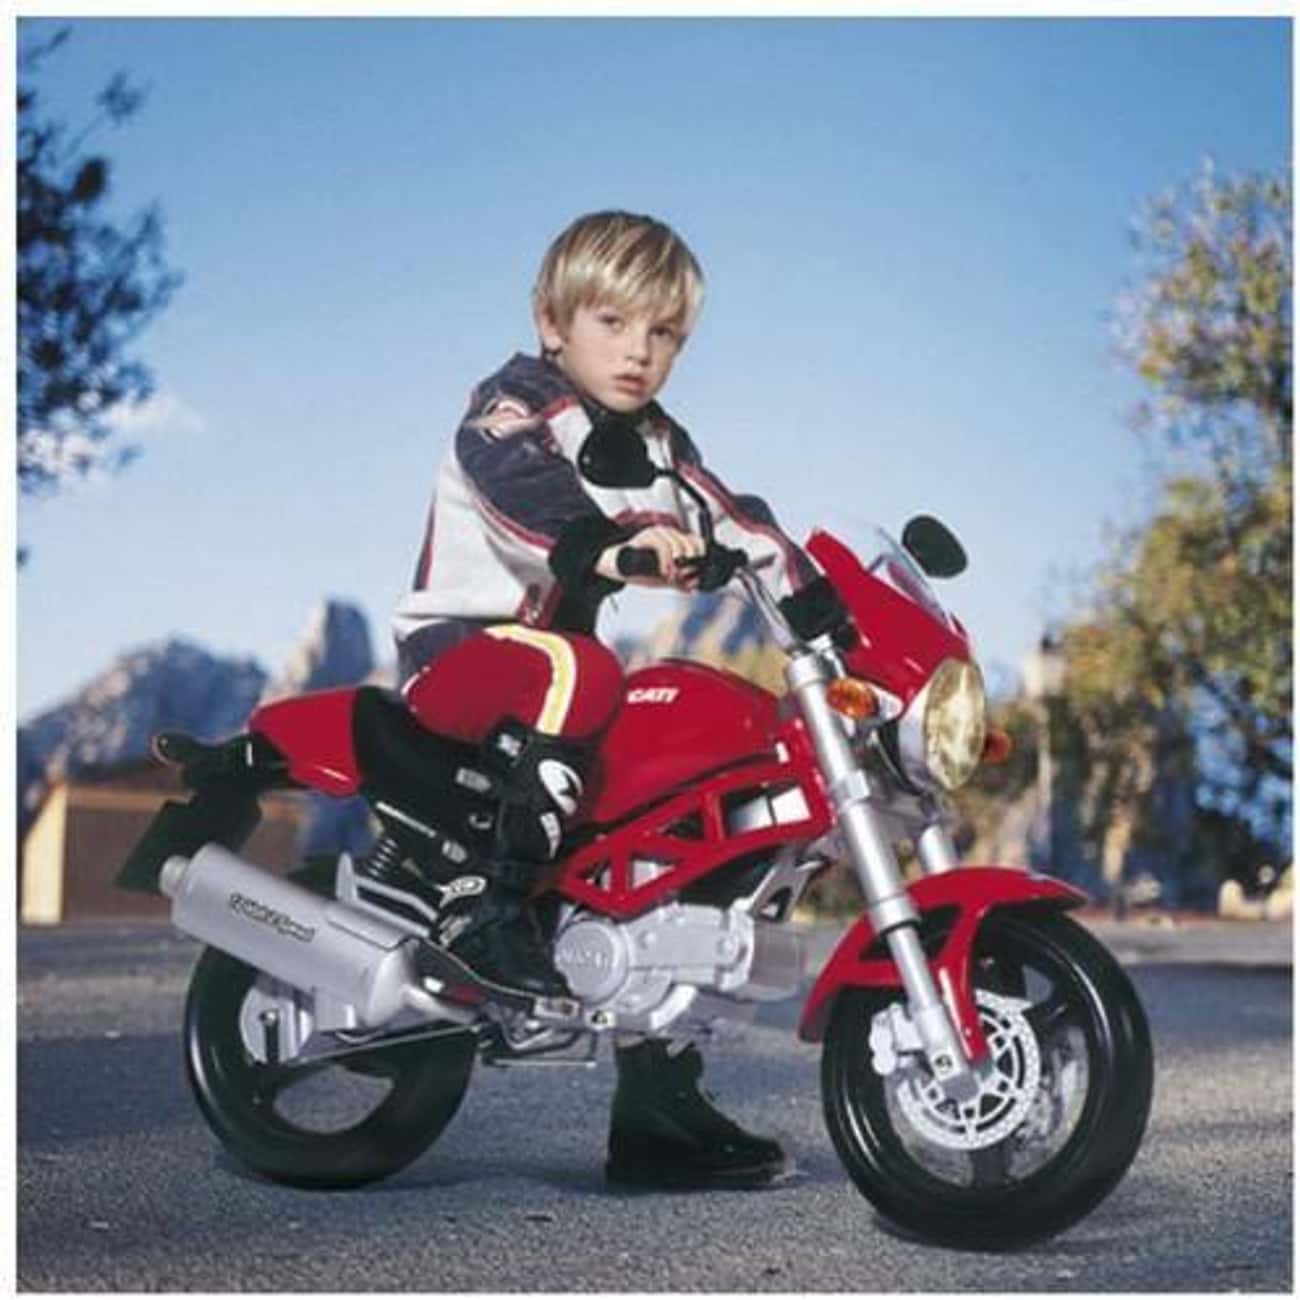 Мотоцикл для детей